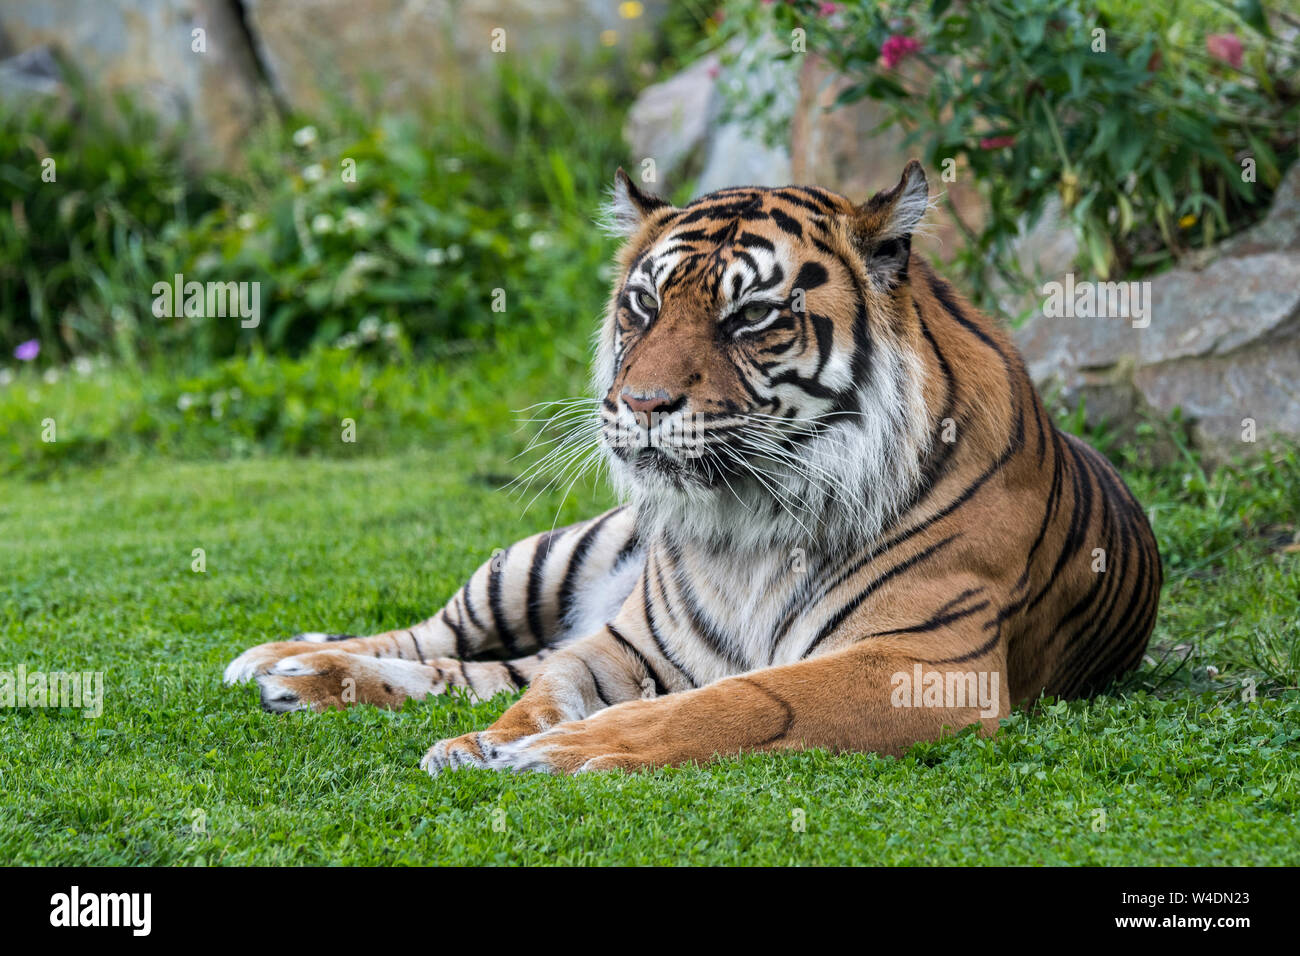 Tigre de Sumatra (Panthera tigris sondaica) indigènes de l'île indonésienne de Sumatra, Indonésie Banque D'Images